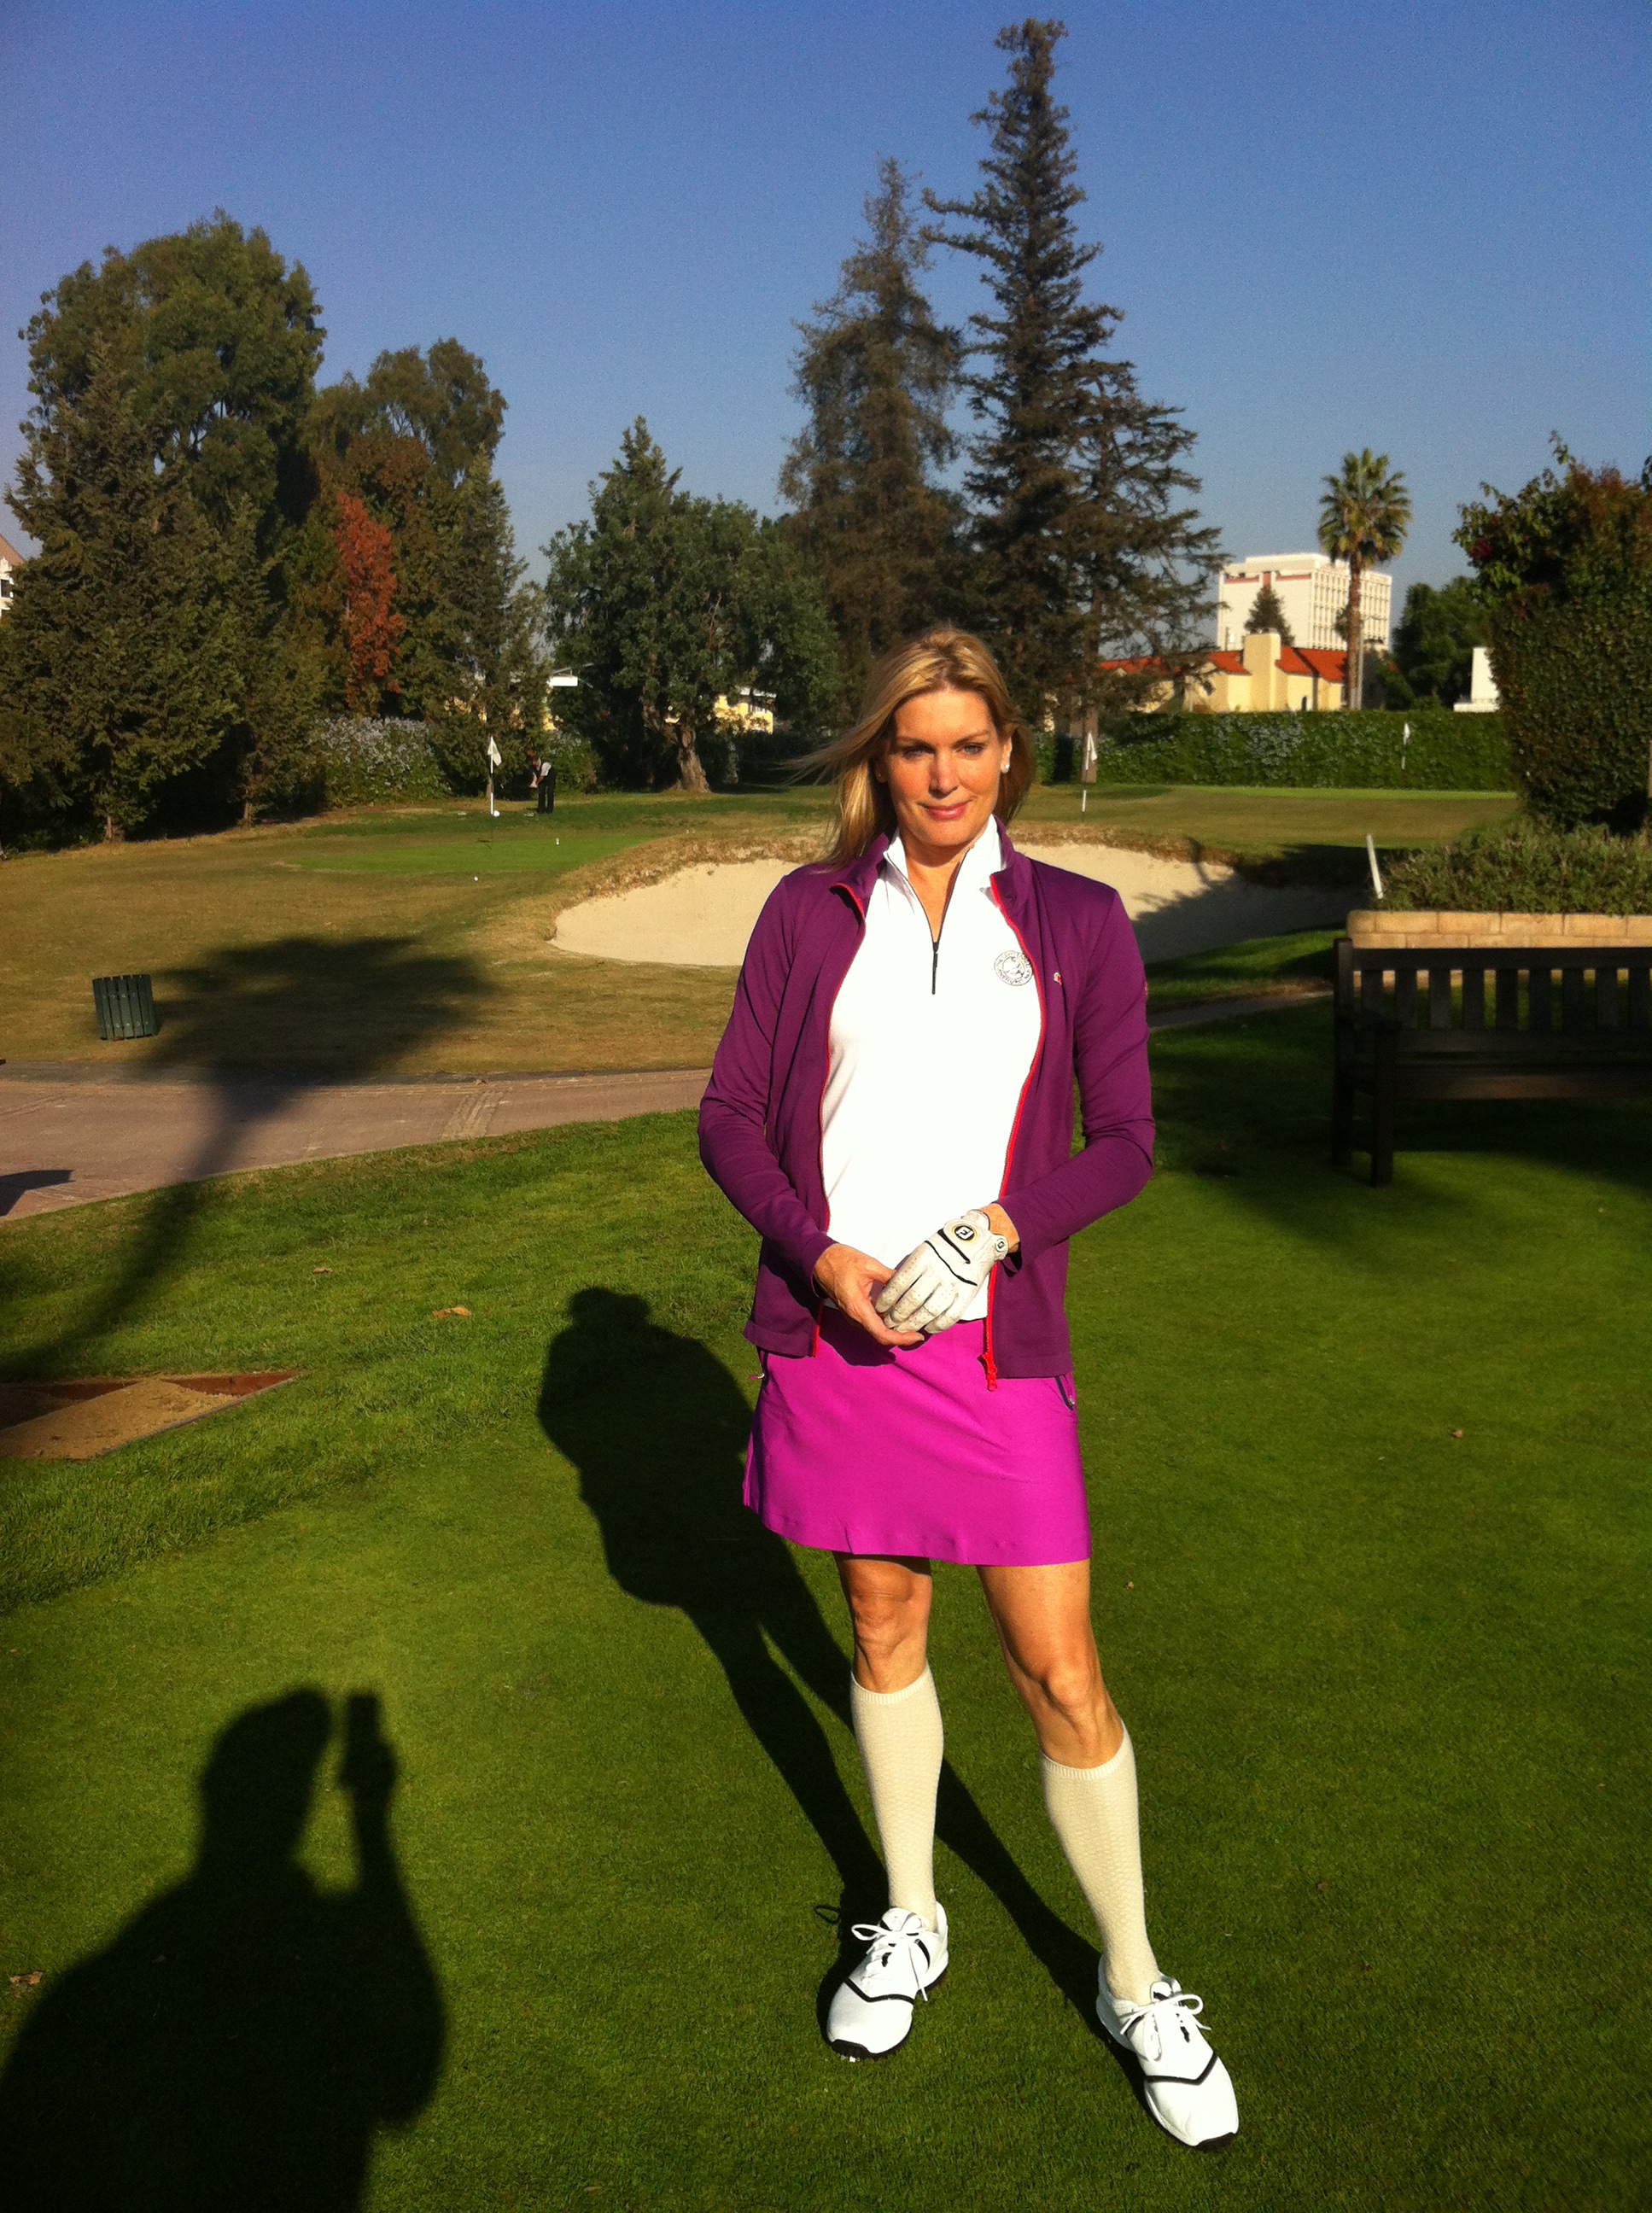 Still of LaReine Chabut Northwestern Golf Tournament